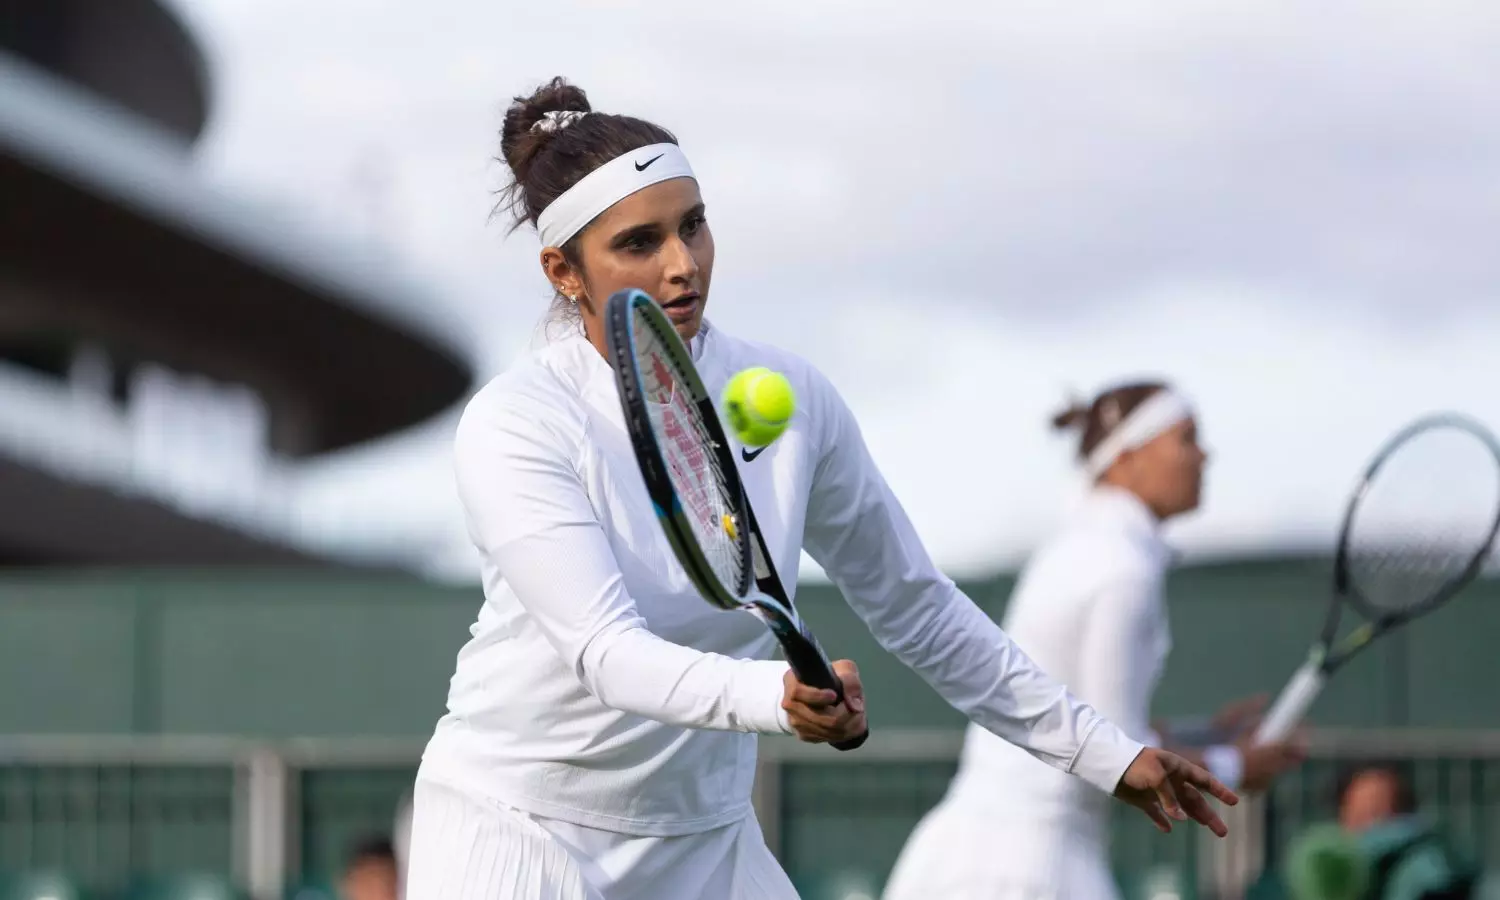 Sania Mirza Xnxx Video - Wimbledon 2022: Sania Mirza bows out of Women's Doubles one last time